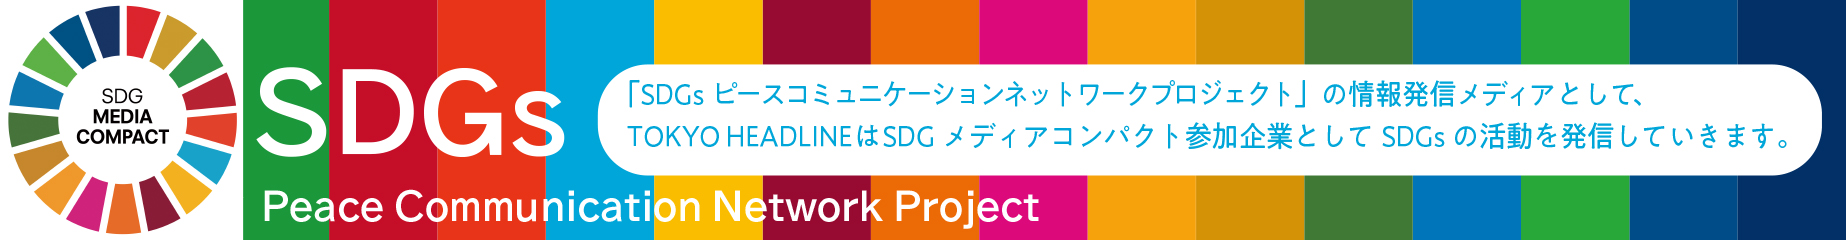 SDGs ピースコミュニケーションネットワークプロジェクト